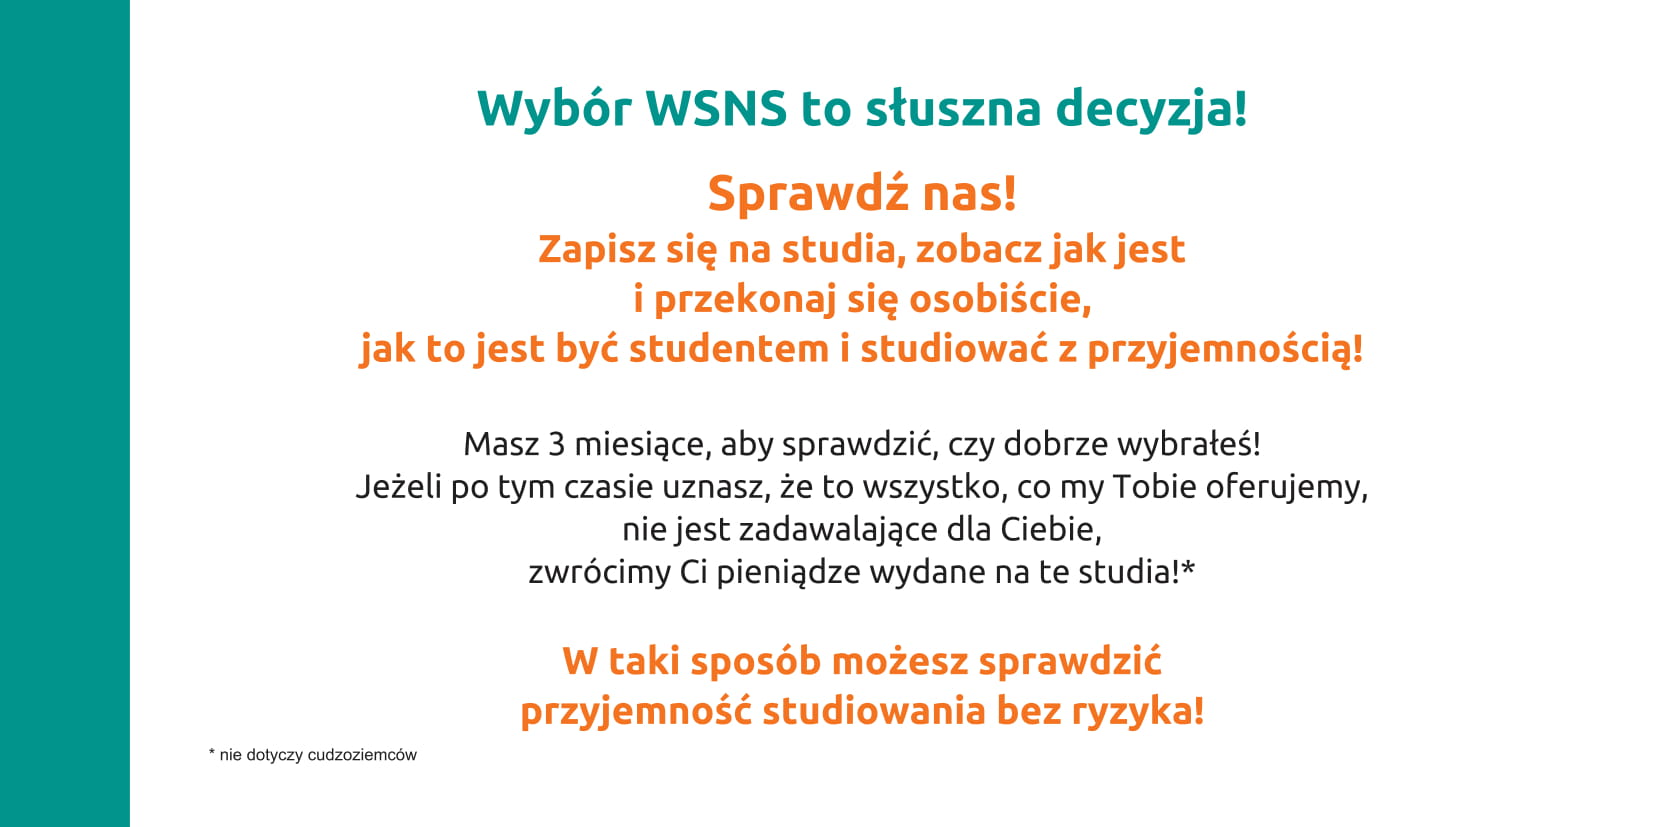 Katalog WSNS